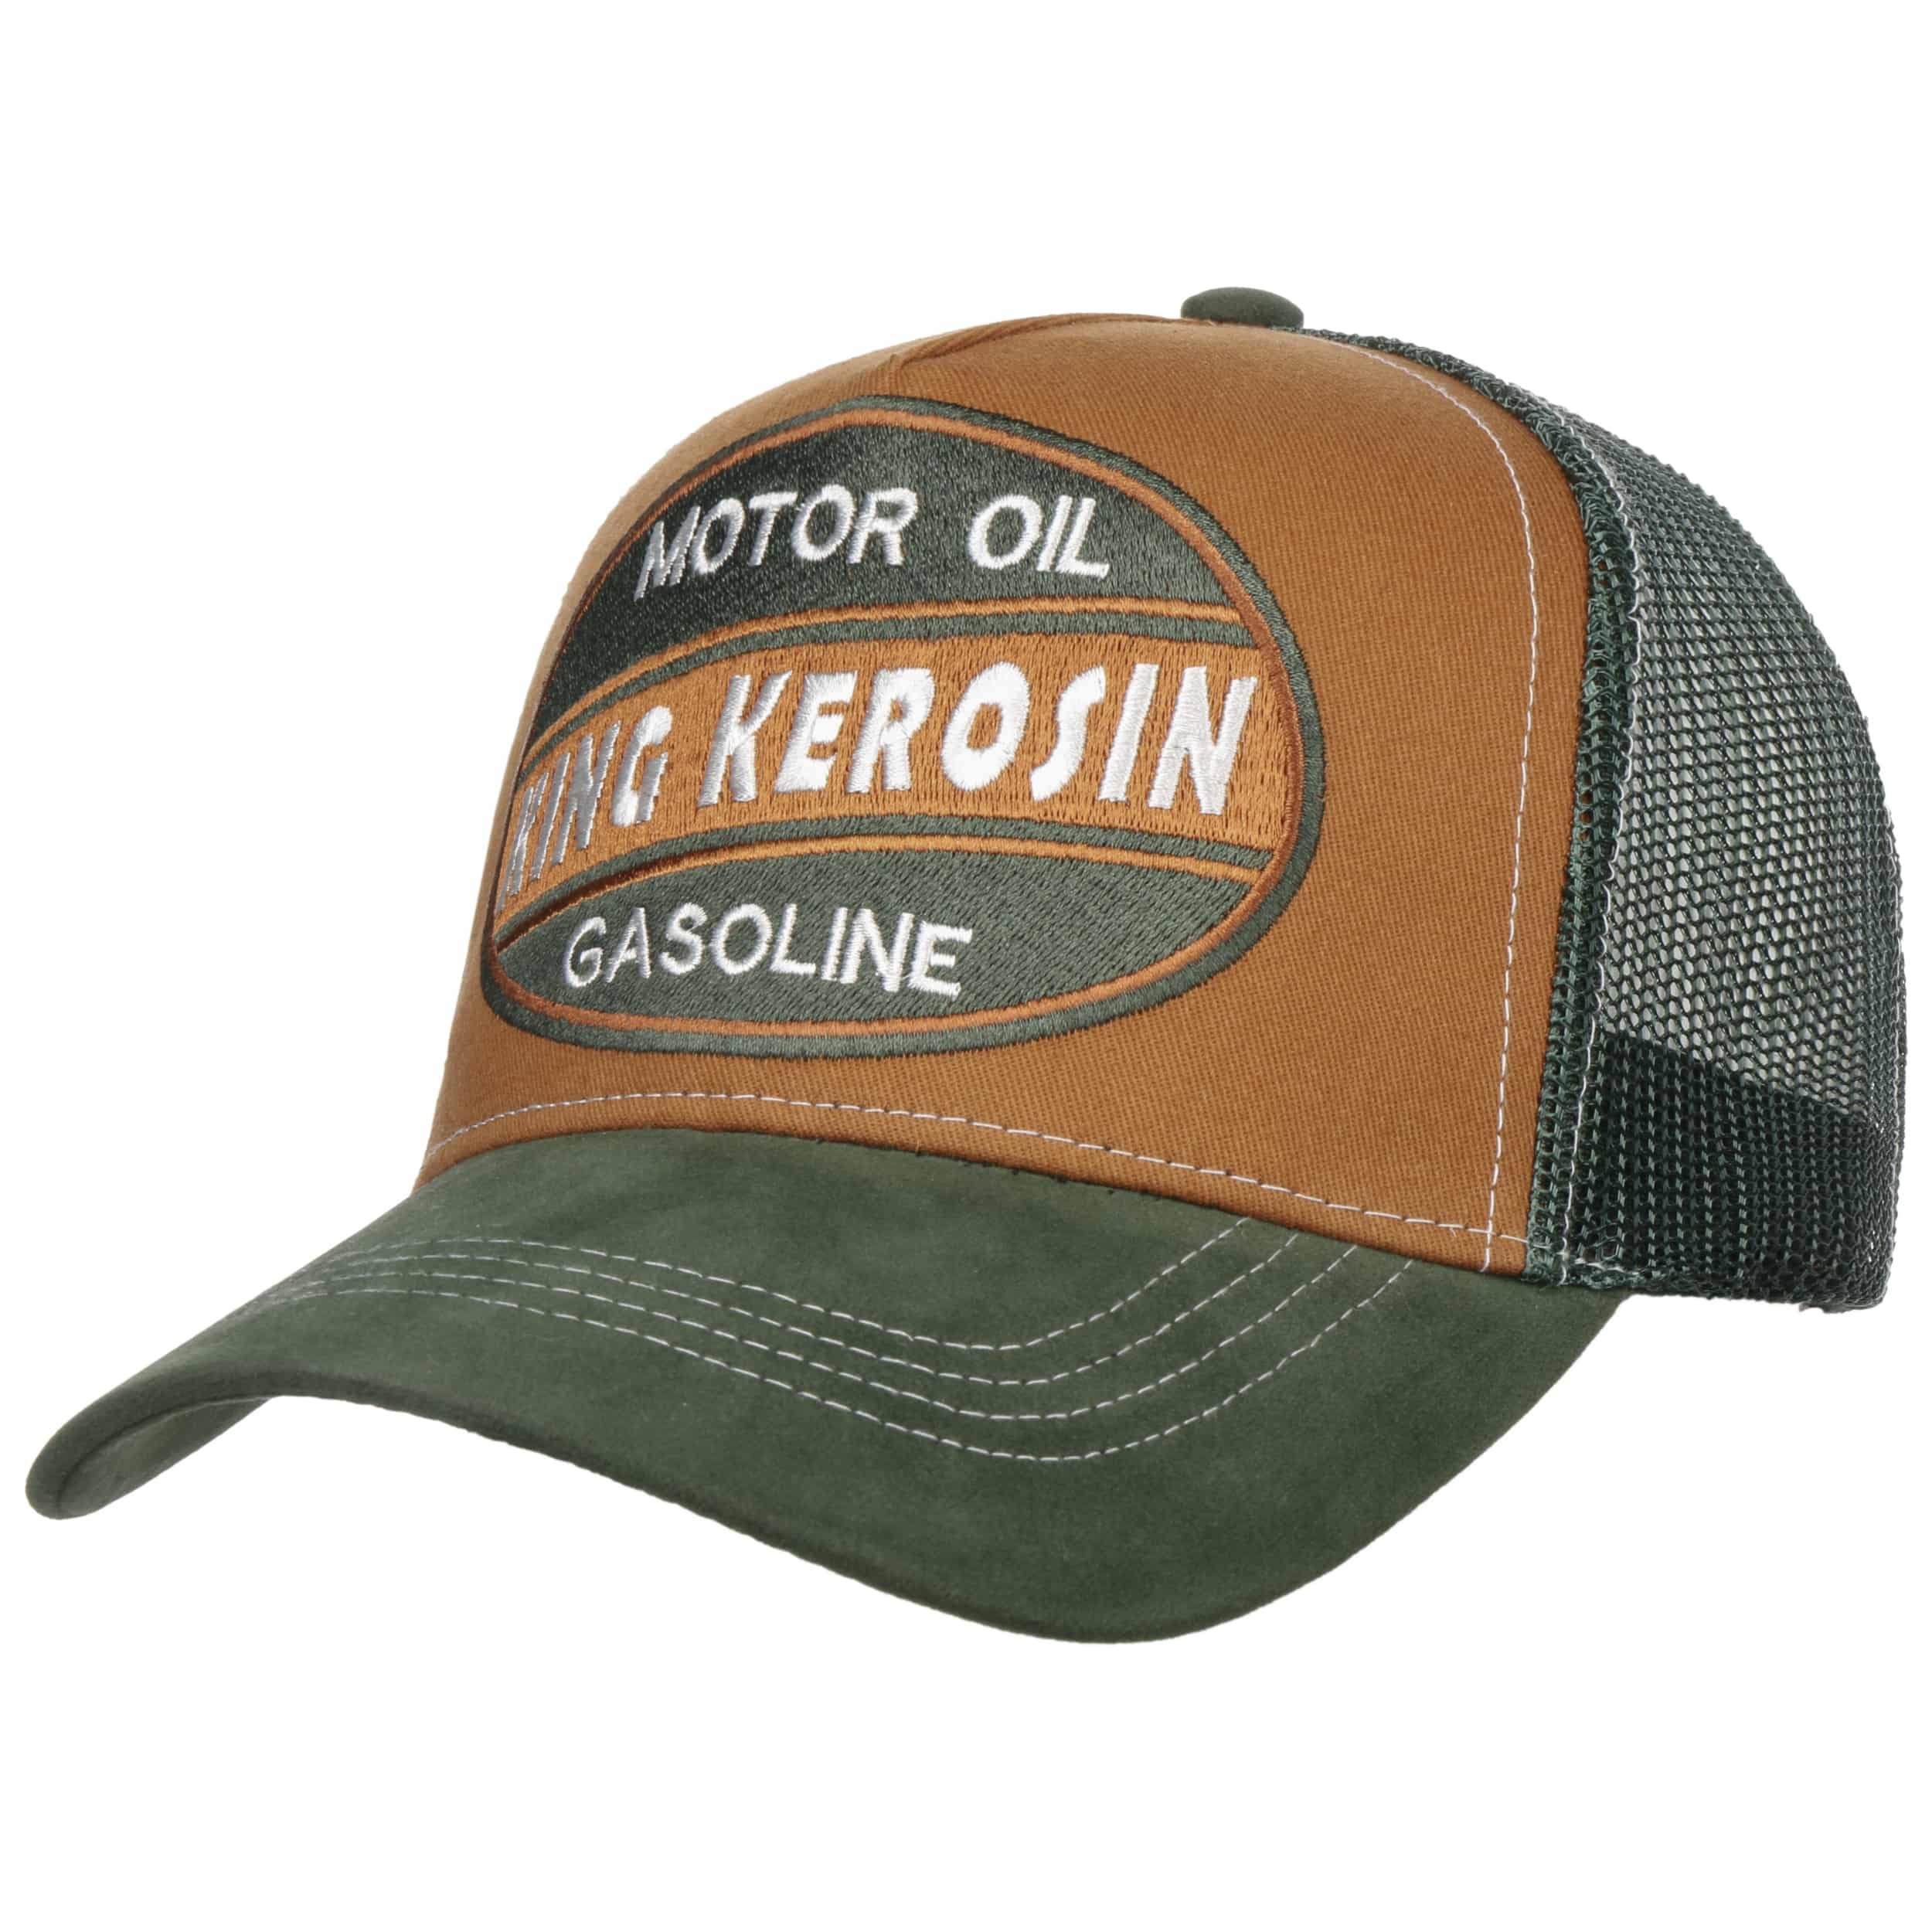 Motor Oil Gasoline Trucker Cap by King Kerosin